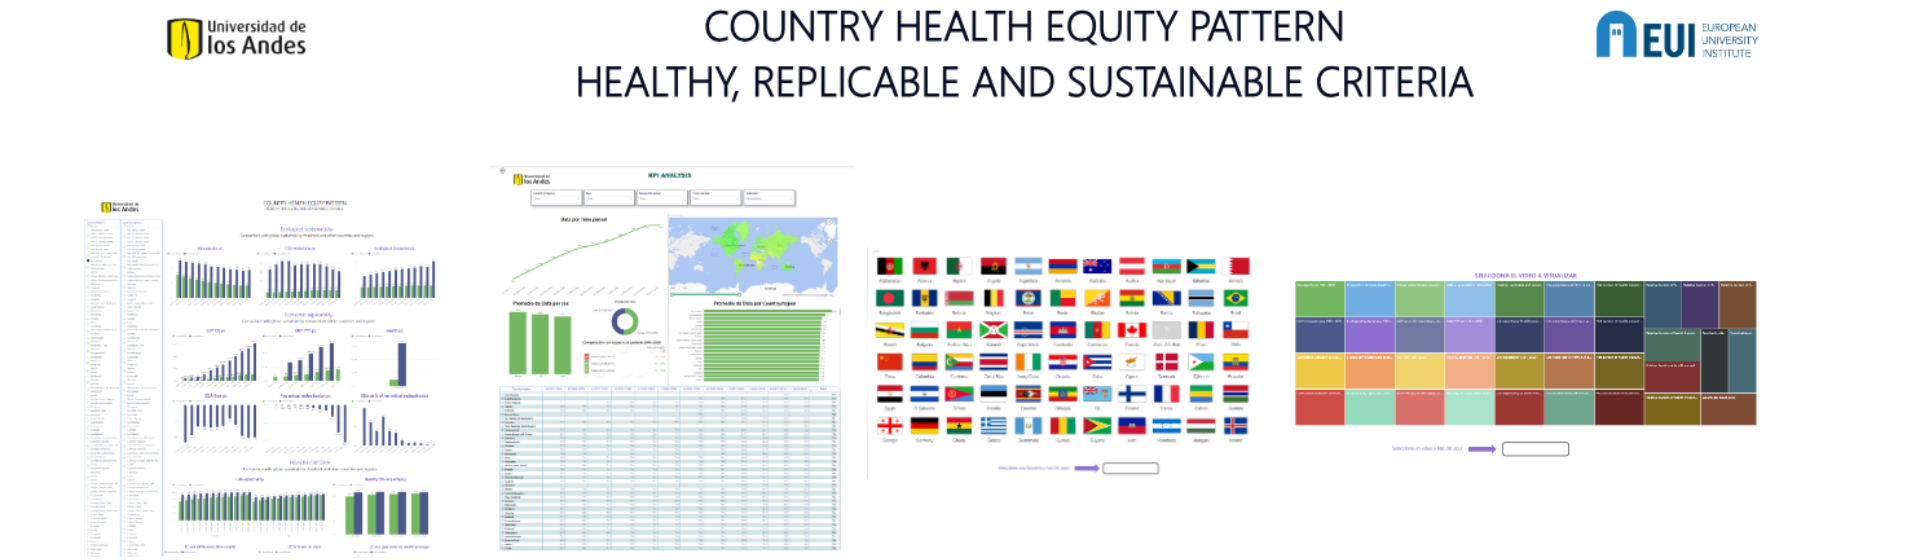 Atlas de medición de equidad en salud sostenible